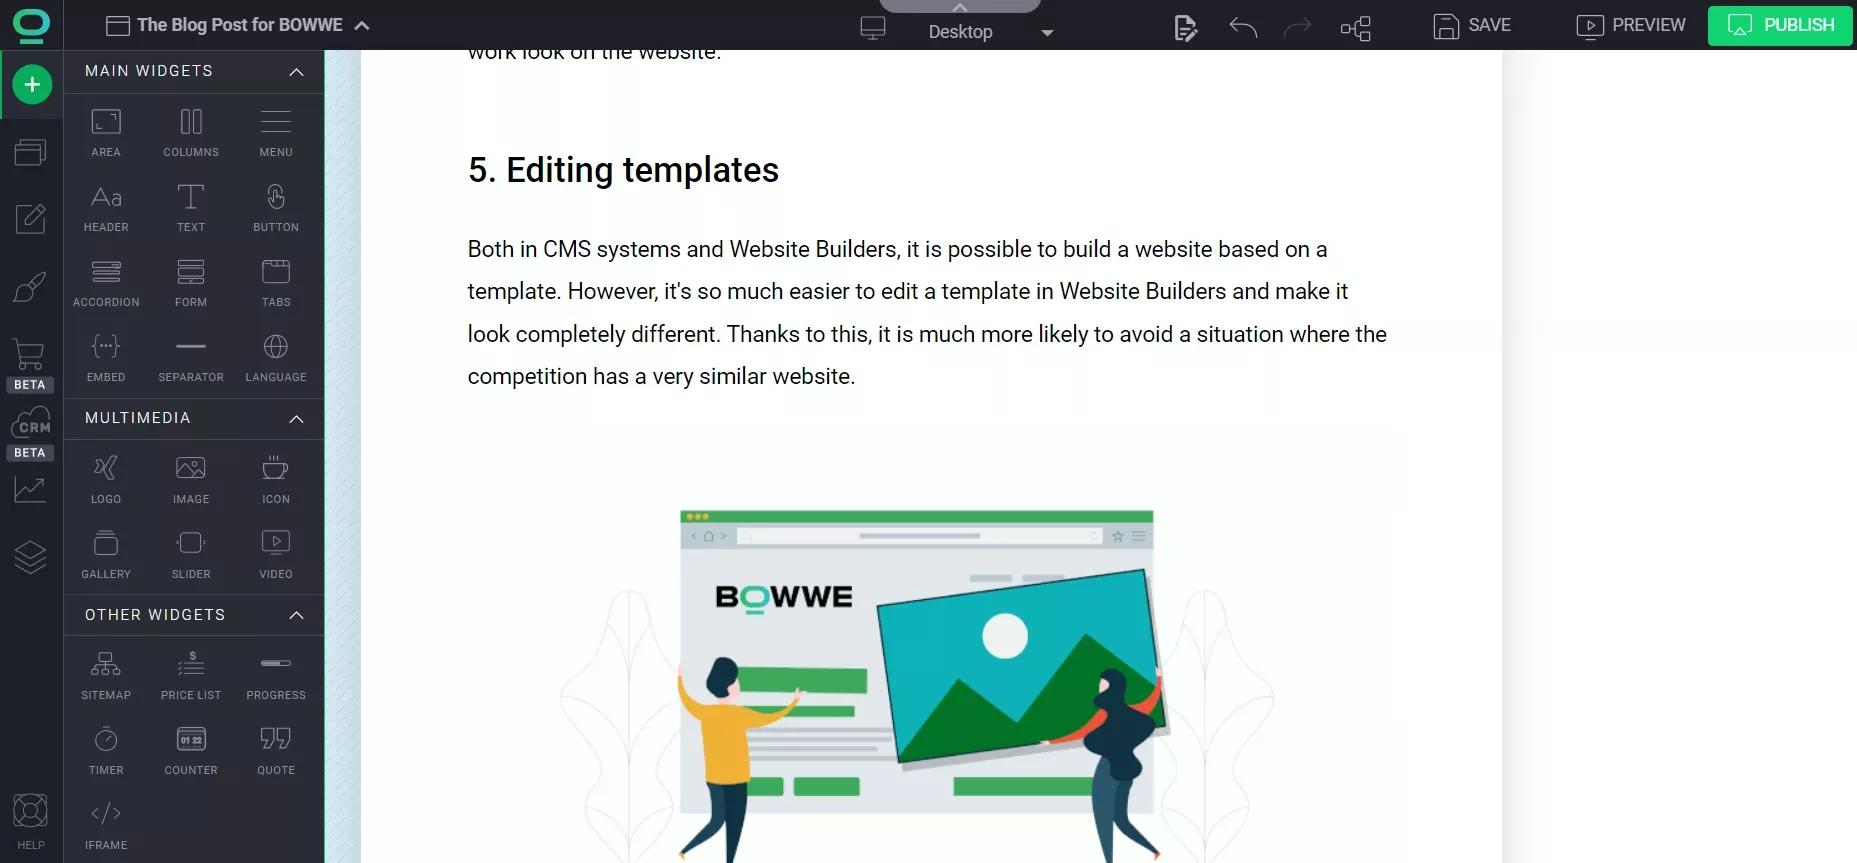 Screenshot of the BOWWE website builder